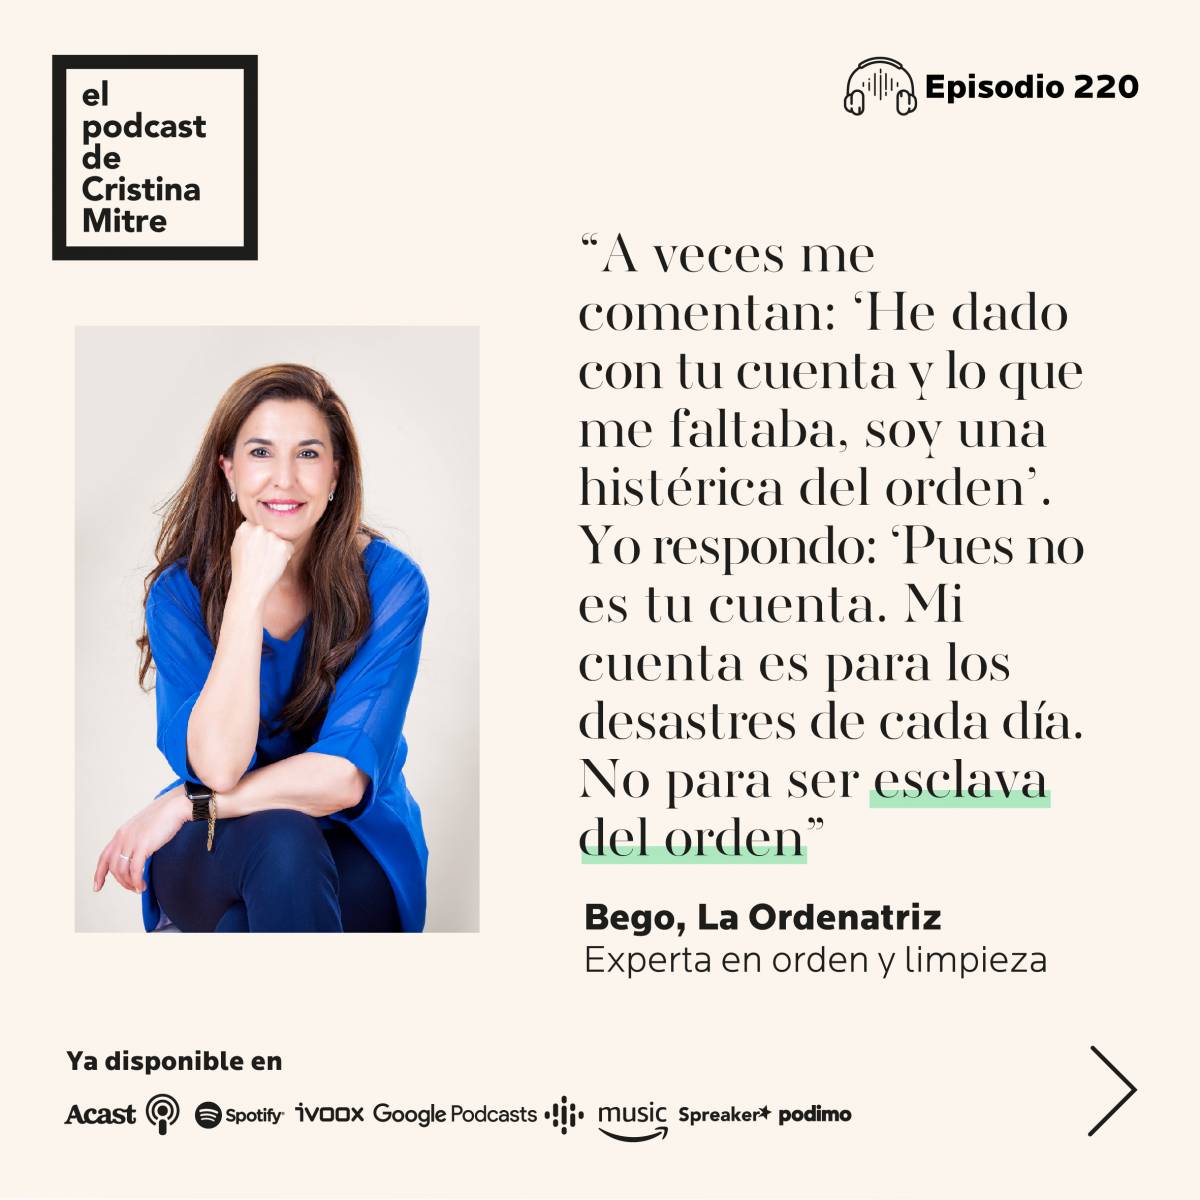 El podcast de Cristina Mitre La ordenatriz